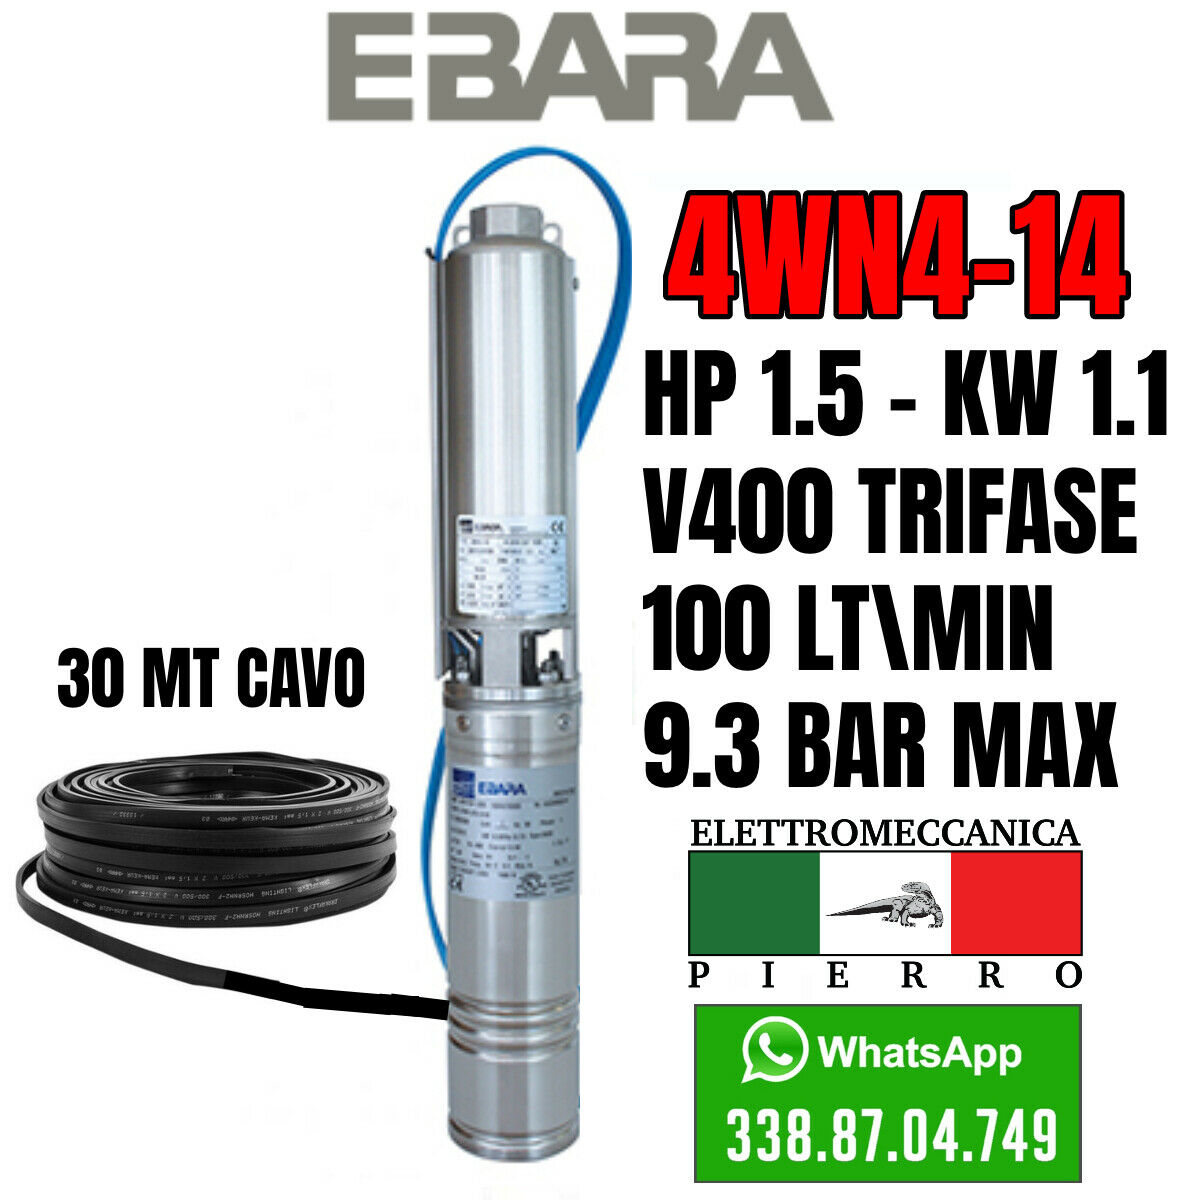 miniatura 24  - POMPA SOMMERSA EBARA 4WN4-14 HP1.5 100LT/MIN 9.3BAR MAX 4GS11 LOWARA COMPATIBILE